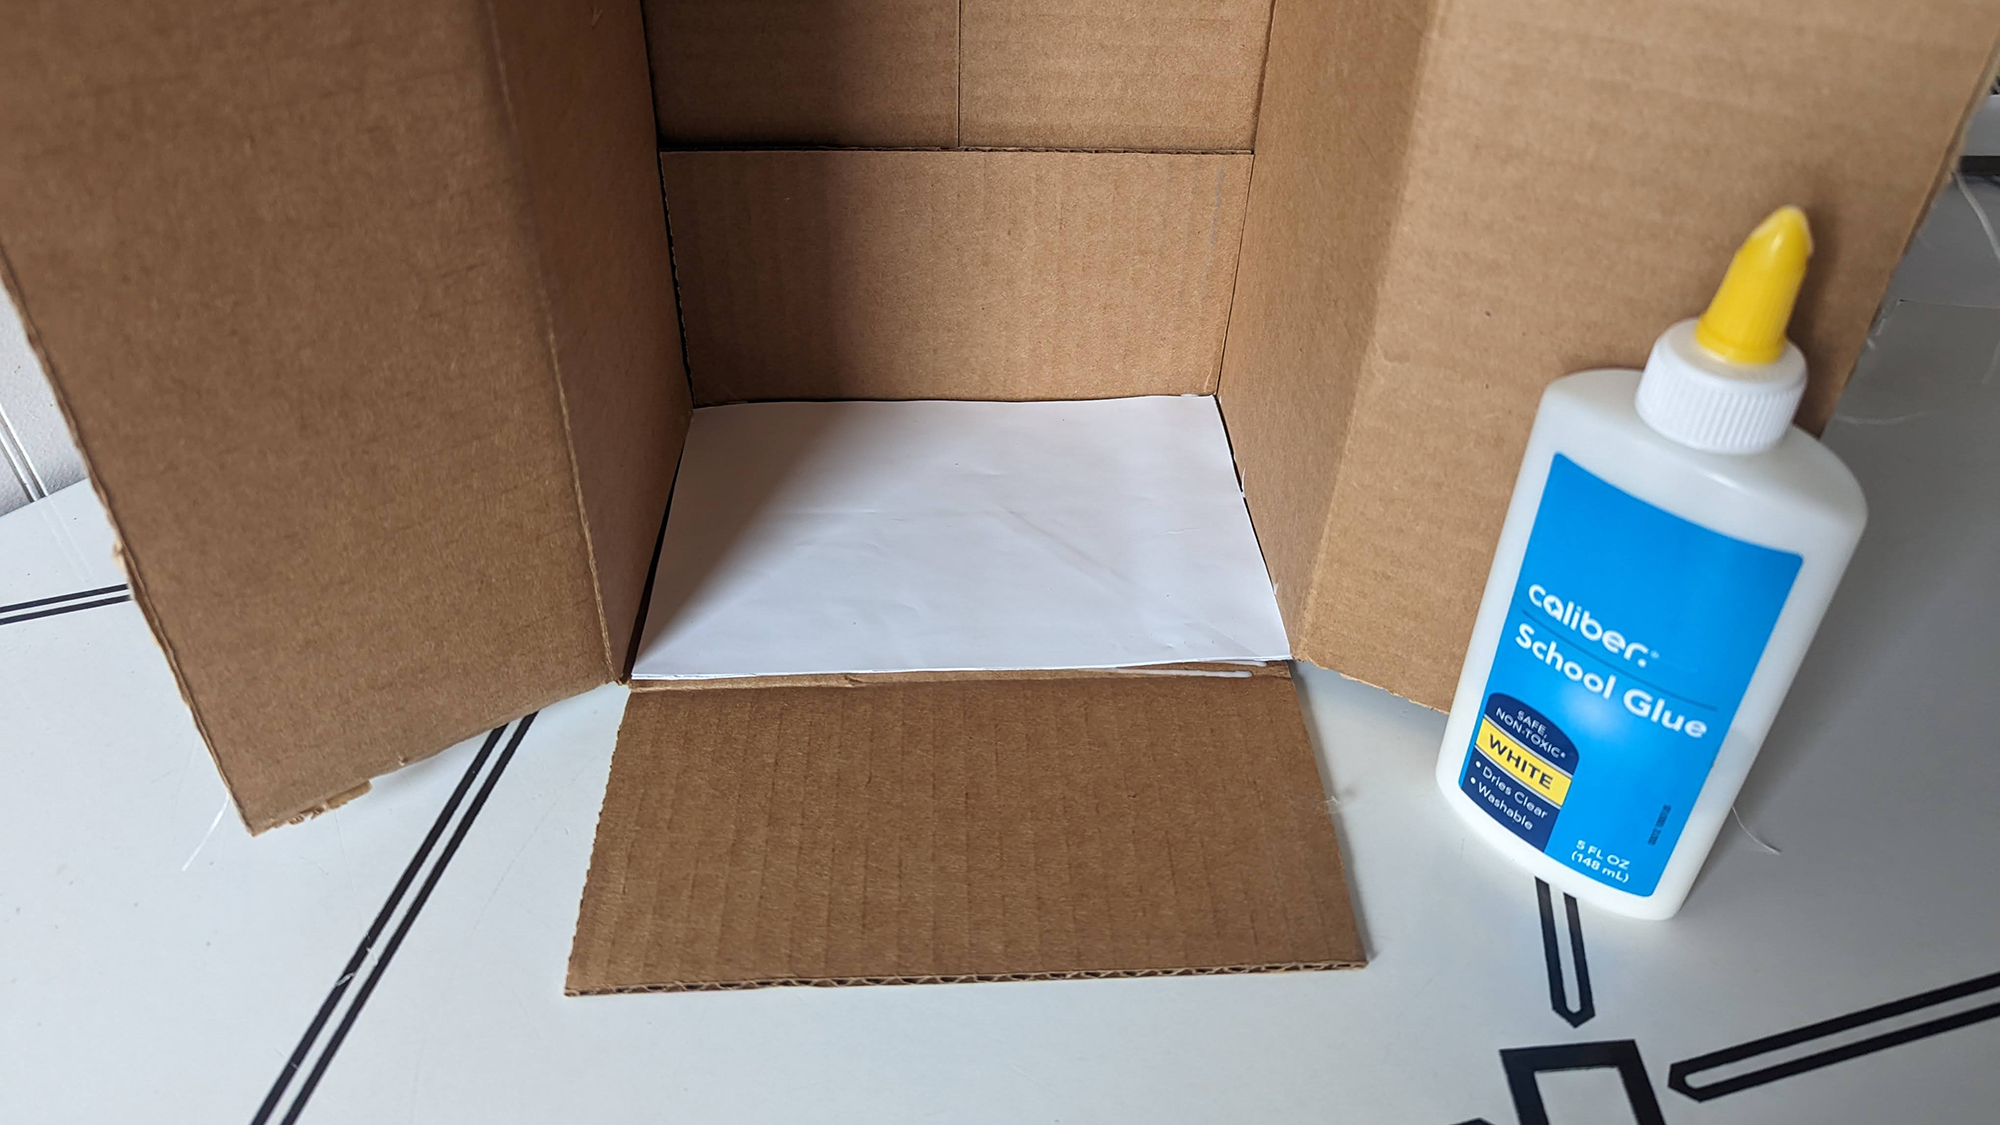 Λευκό φύλλο χαρτιού κολλημένο στο εσωτερικό ενός κουτιού.